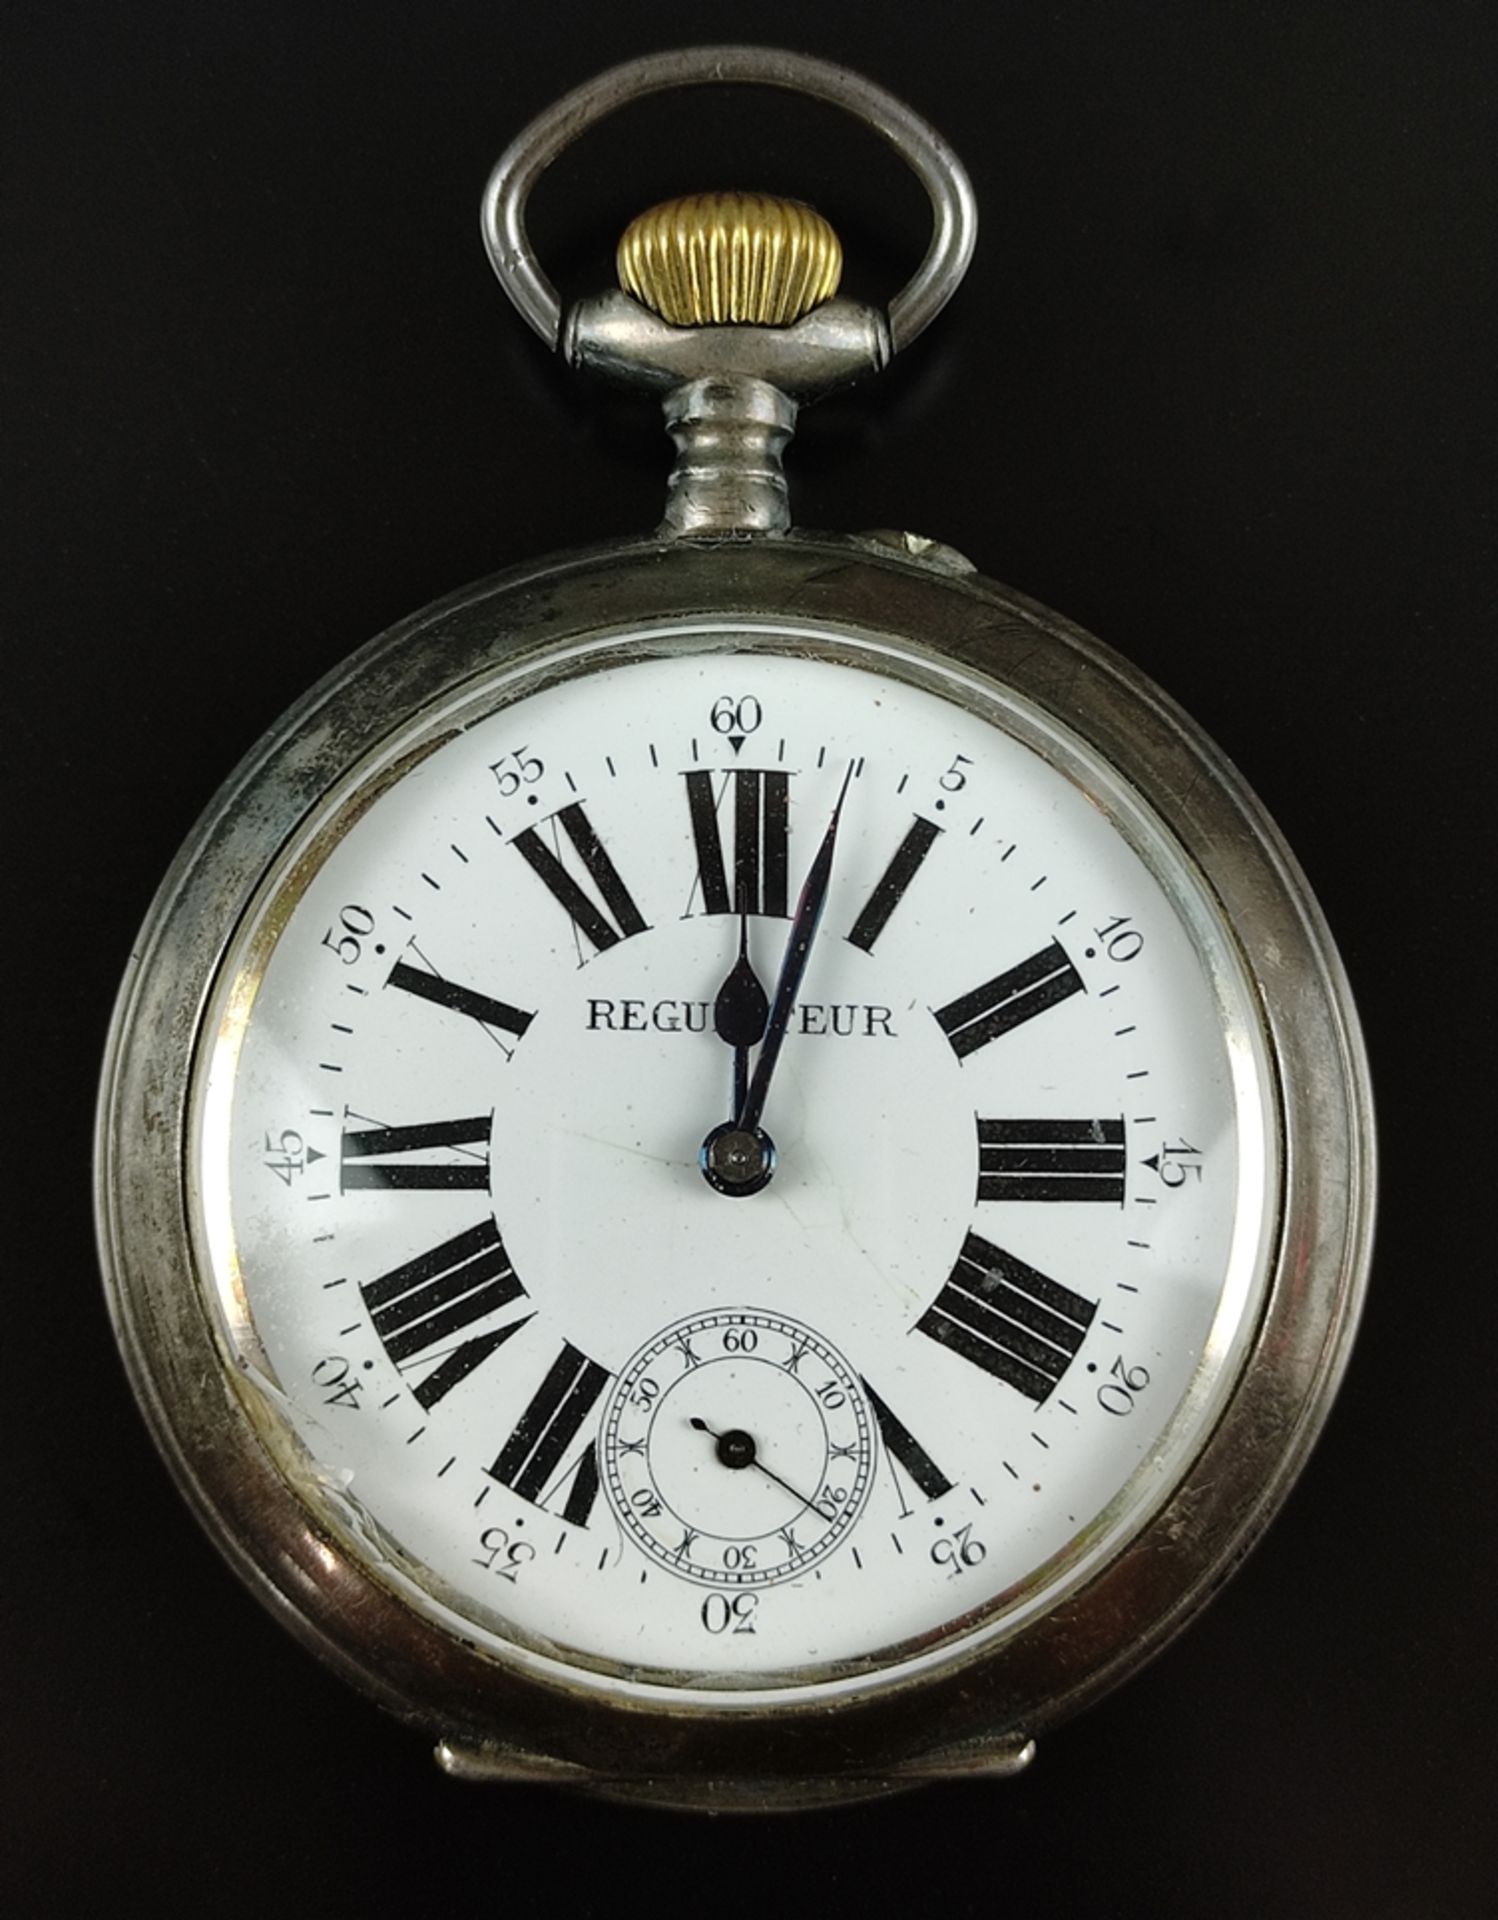 Große Taschenuhr/Eisenbahner-Uhr, "Regulateur" mit kleiner Sekunde, Ziffernblatt mit römischen Ziff